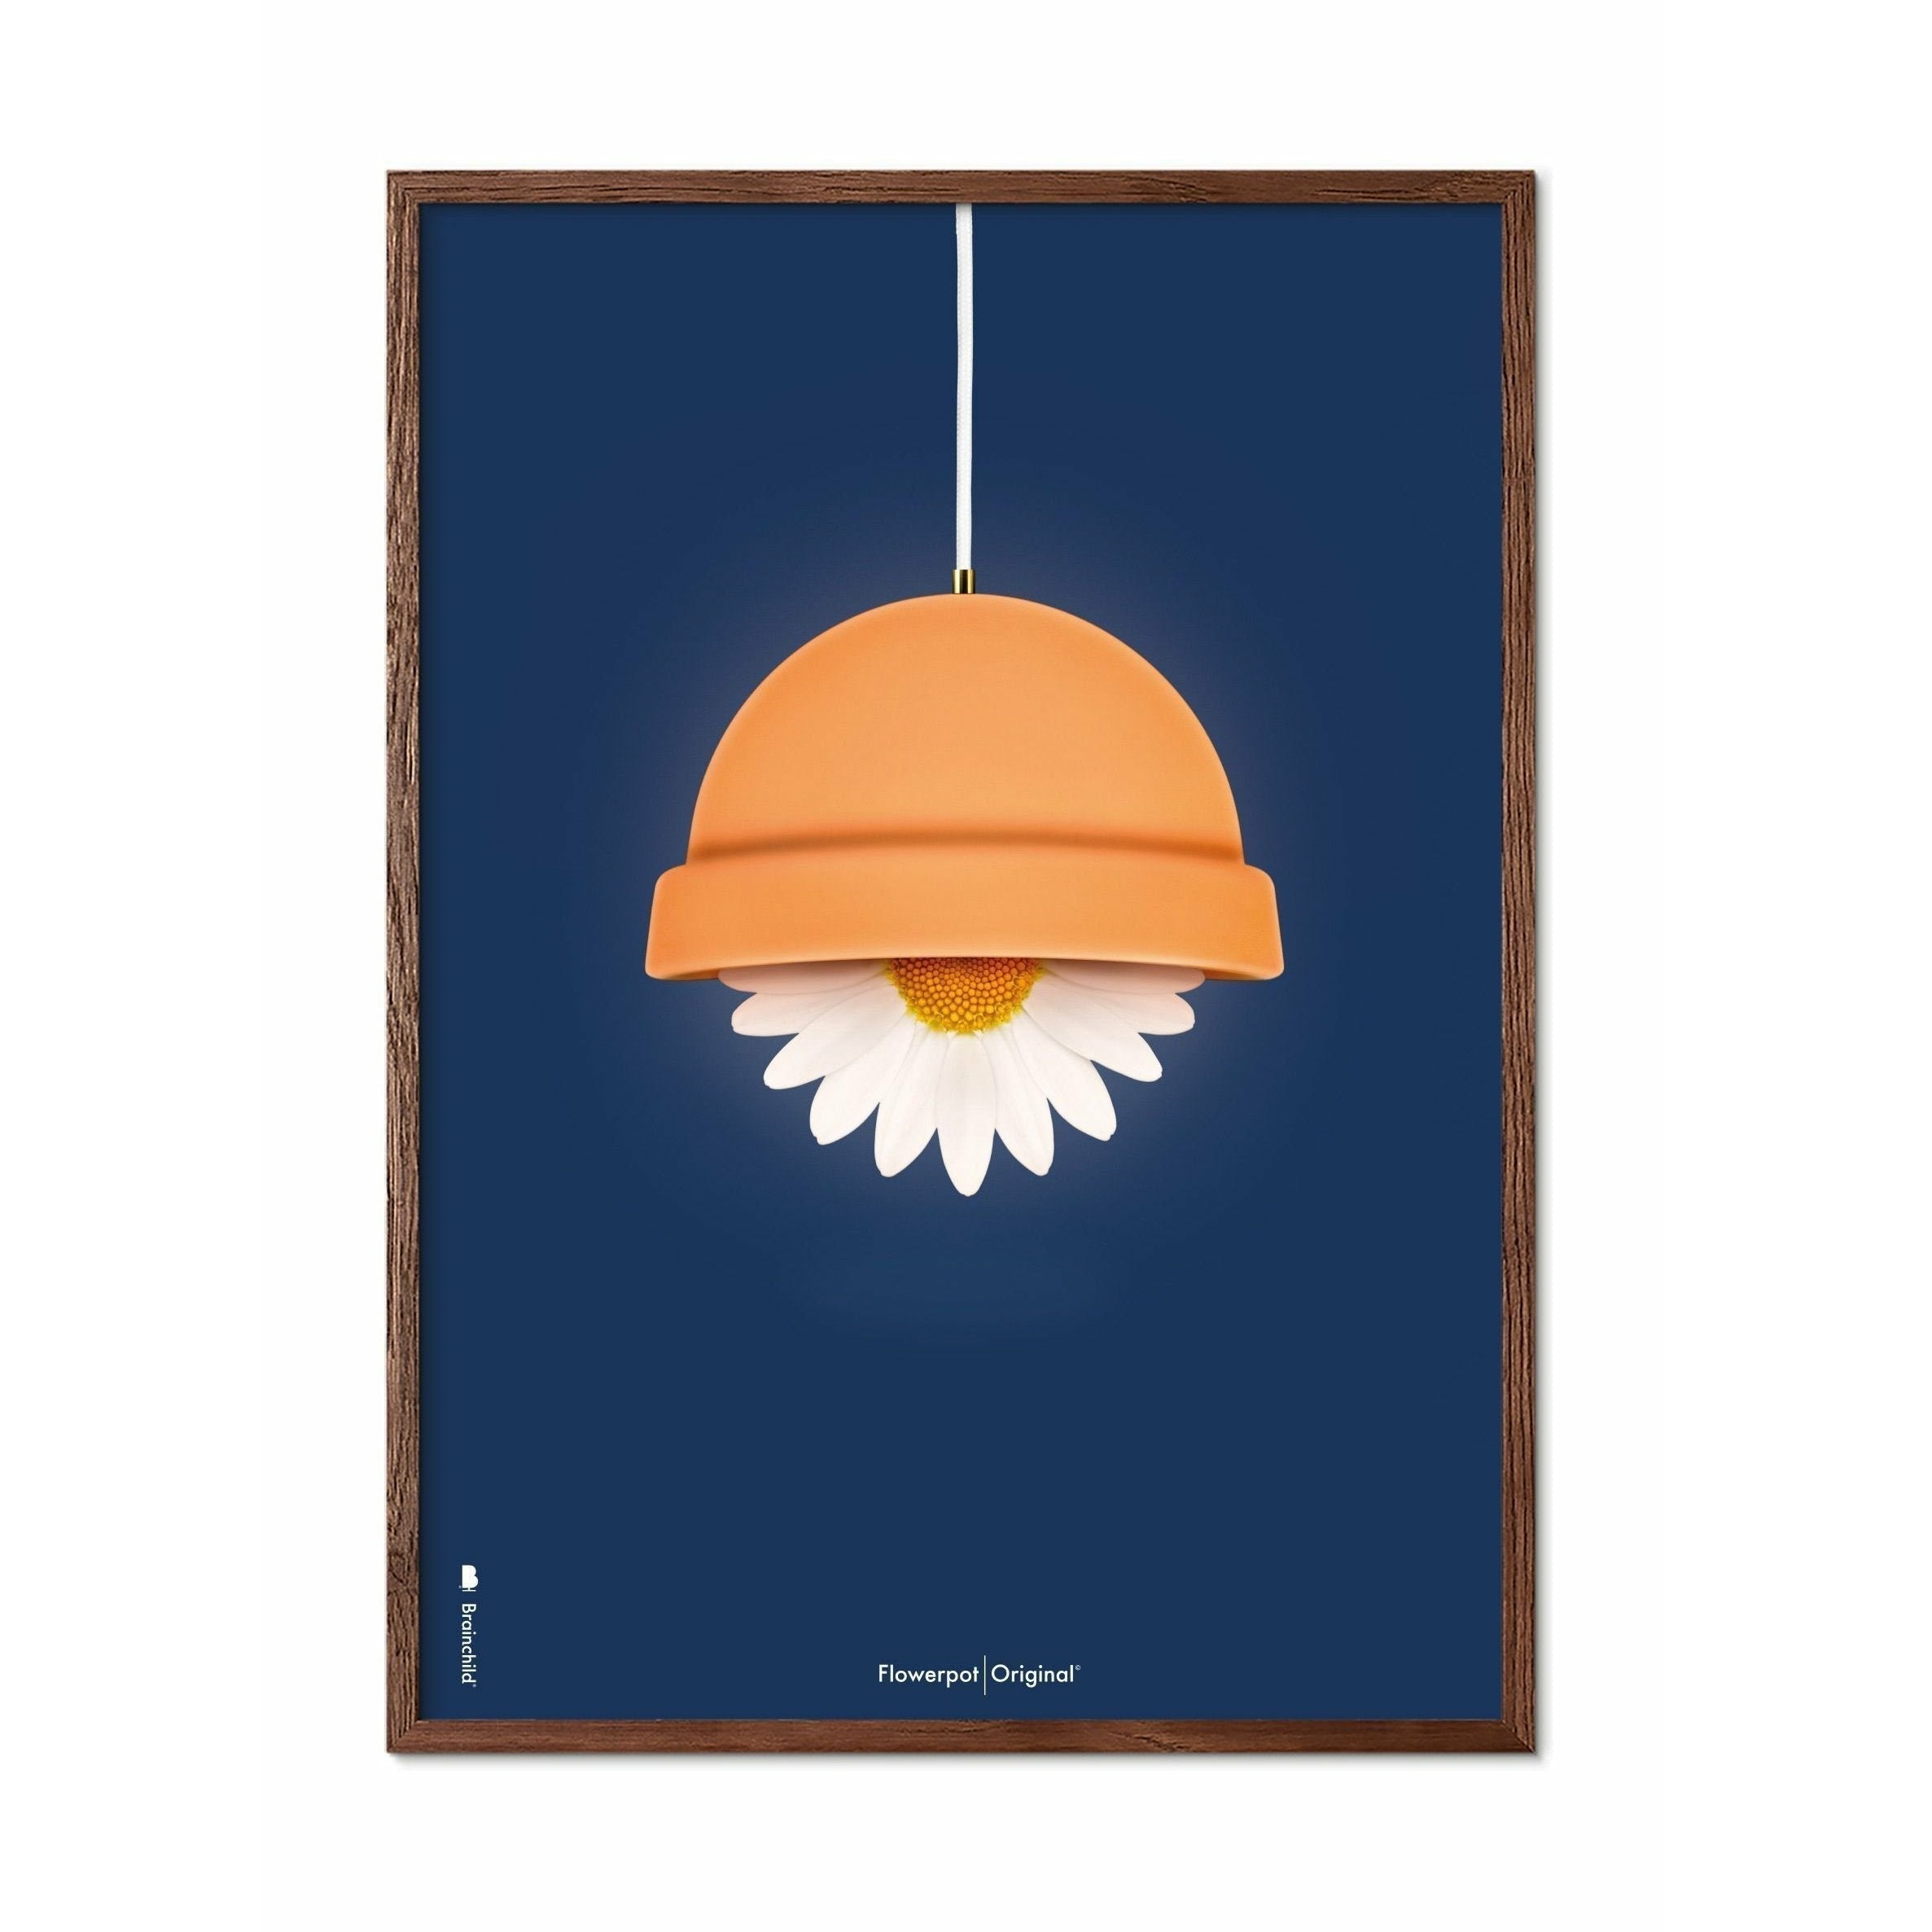 Klasický plakát Brainchild Flowerpot, tmavý dřevěný rám 50x70 cm, tmavě modré pozadí